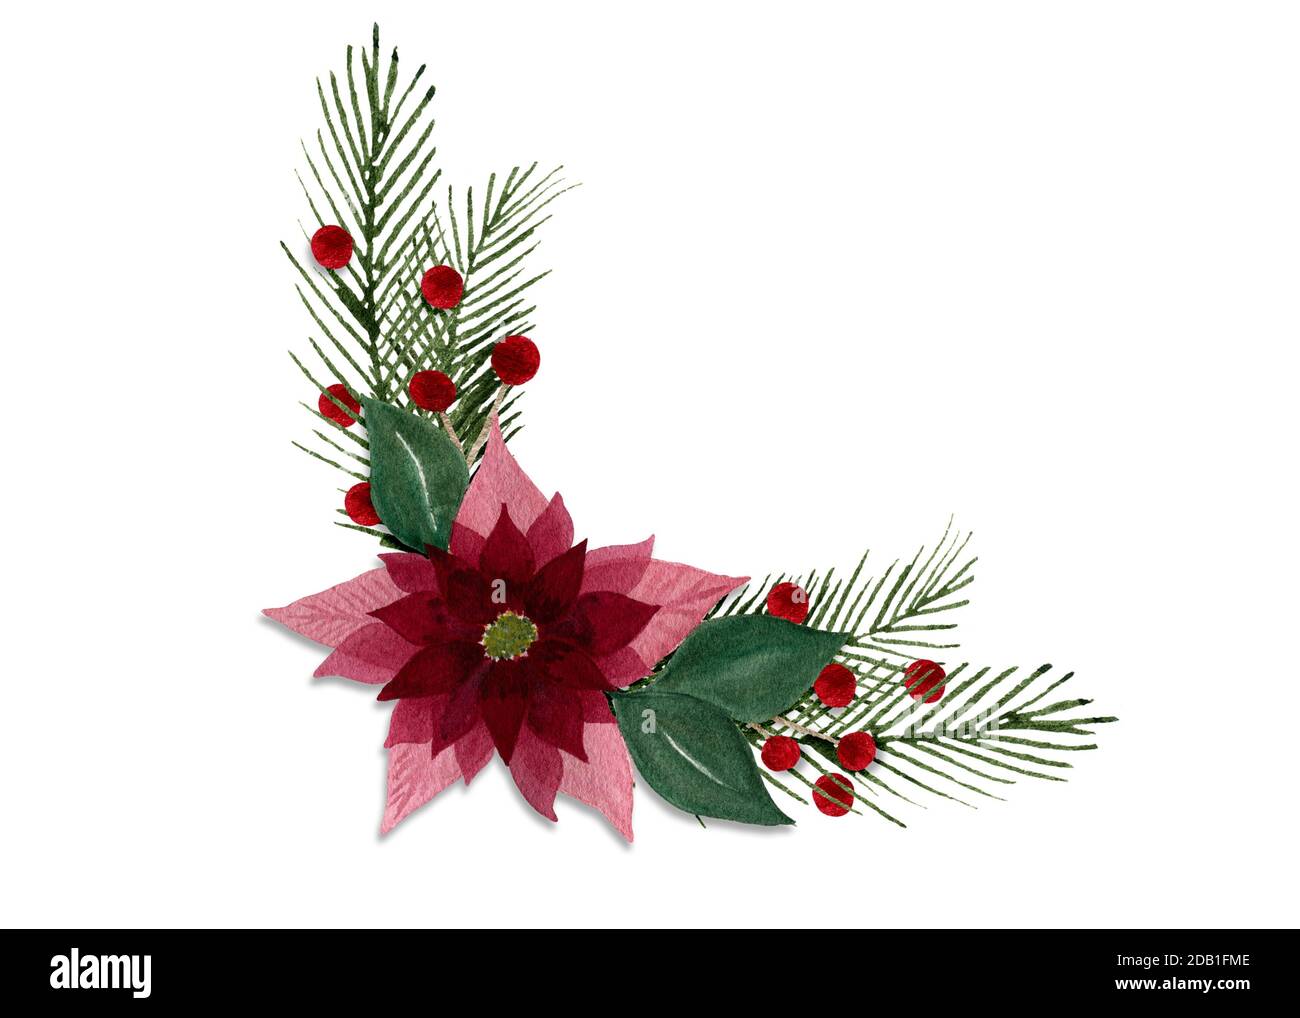 Décoration florale de Noël avec fleur de poinsettia, sapin et baies, aquarelle de Noël et décoration de vacances d'hiver pour cartes et design Banque D'Images